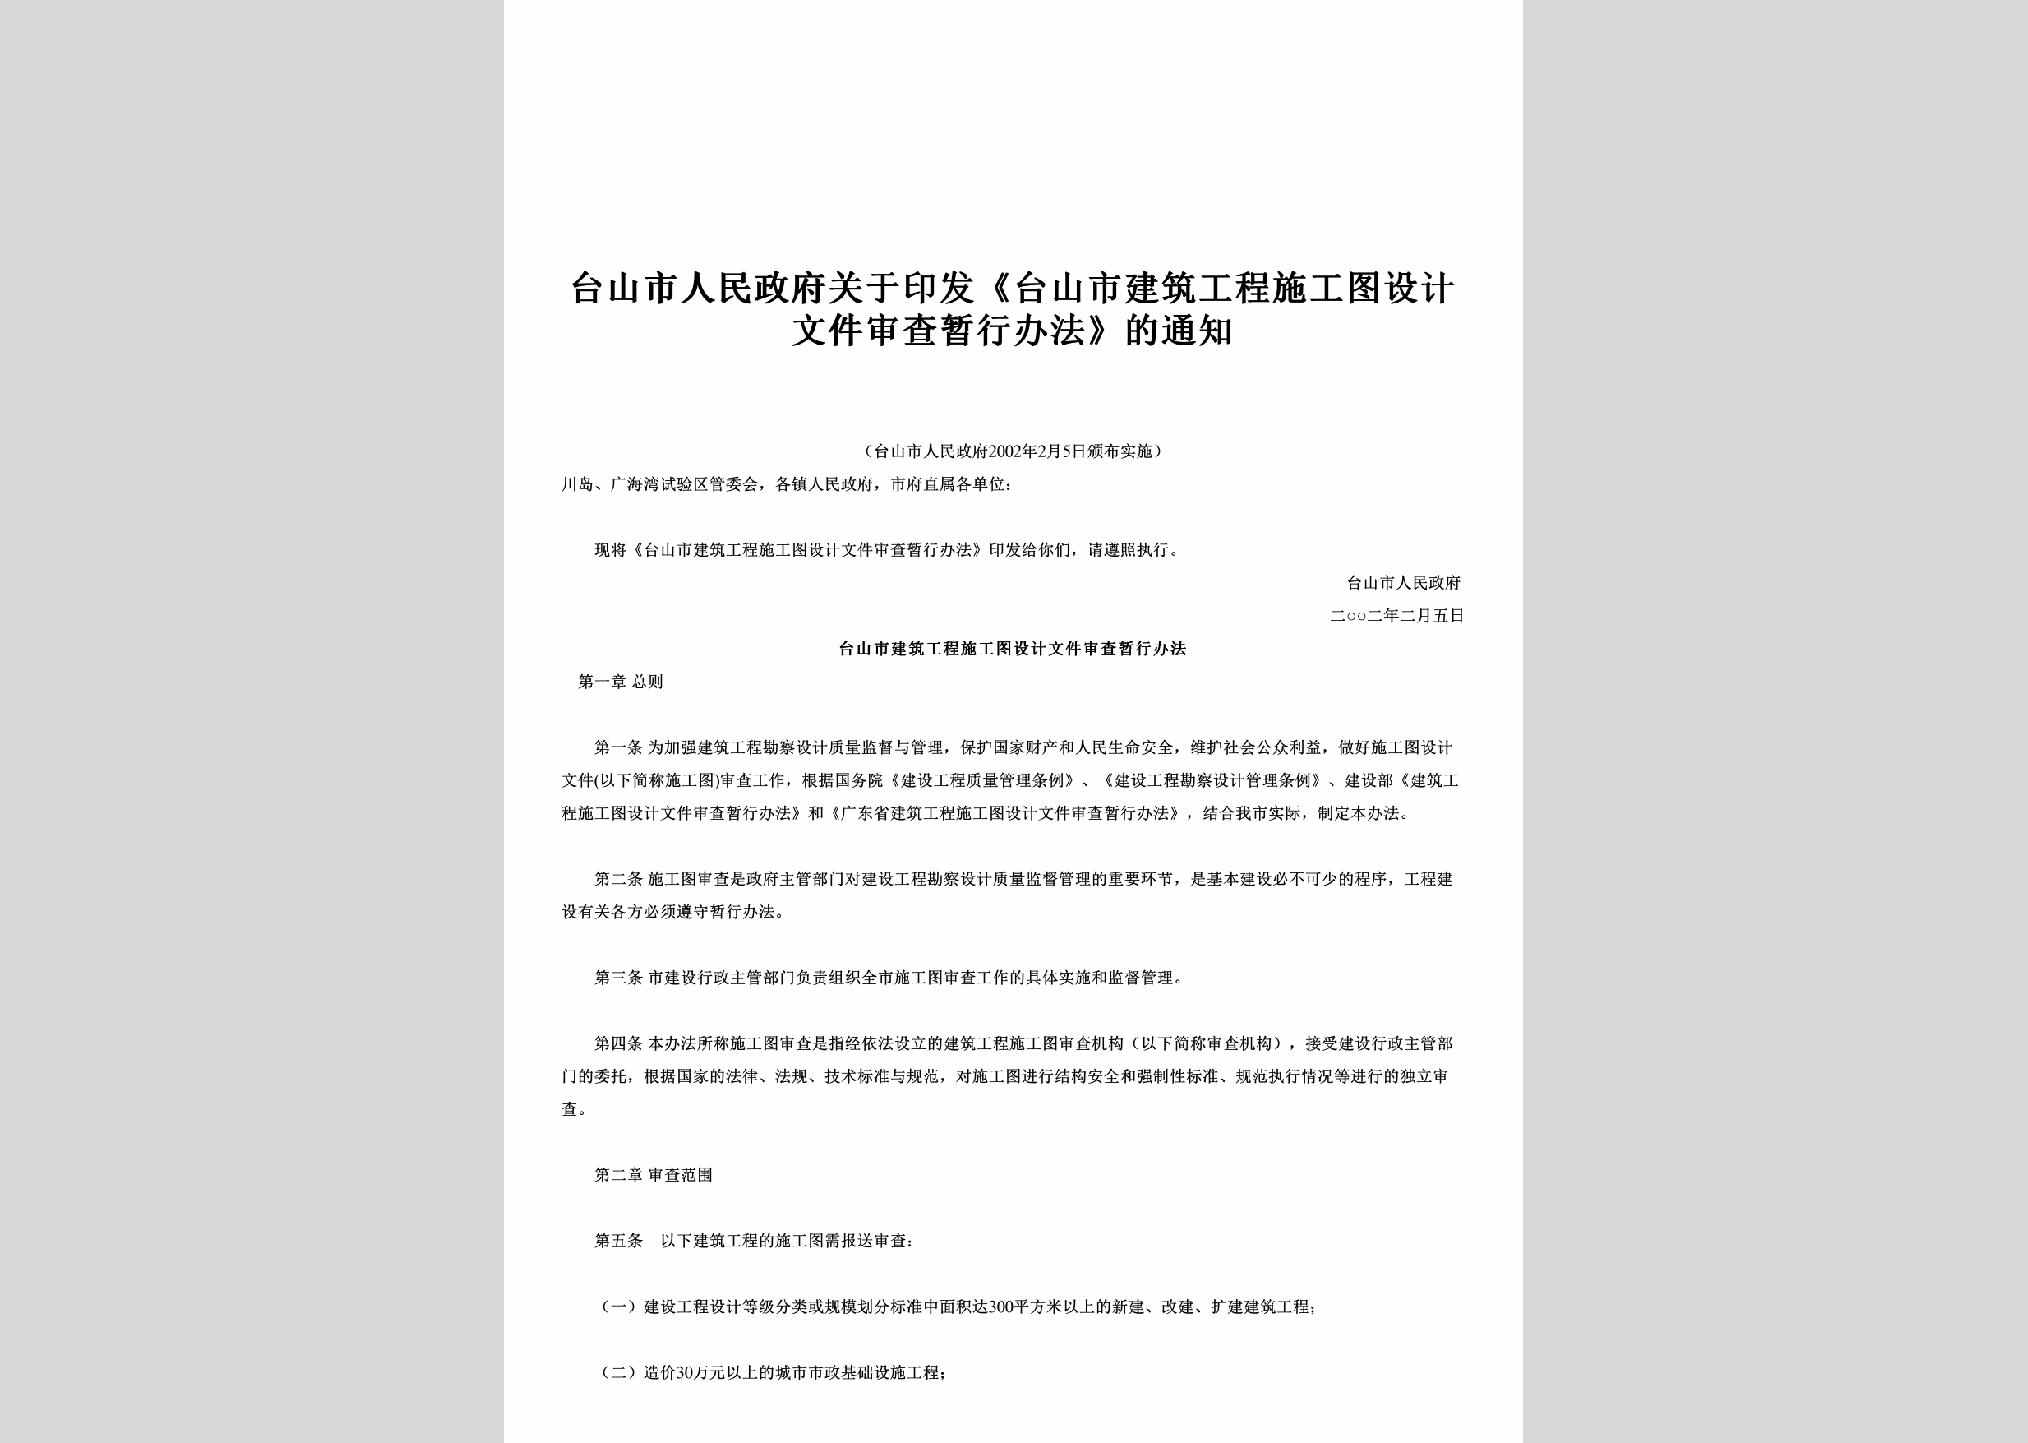 GD-GCWJSCTZ-2002：关于印发《台山市建筑工程施工图设计文件审查暂行办法》的通知